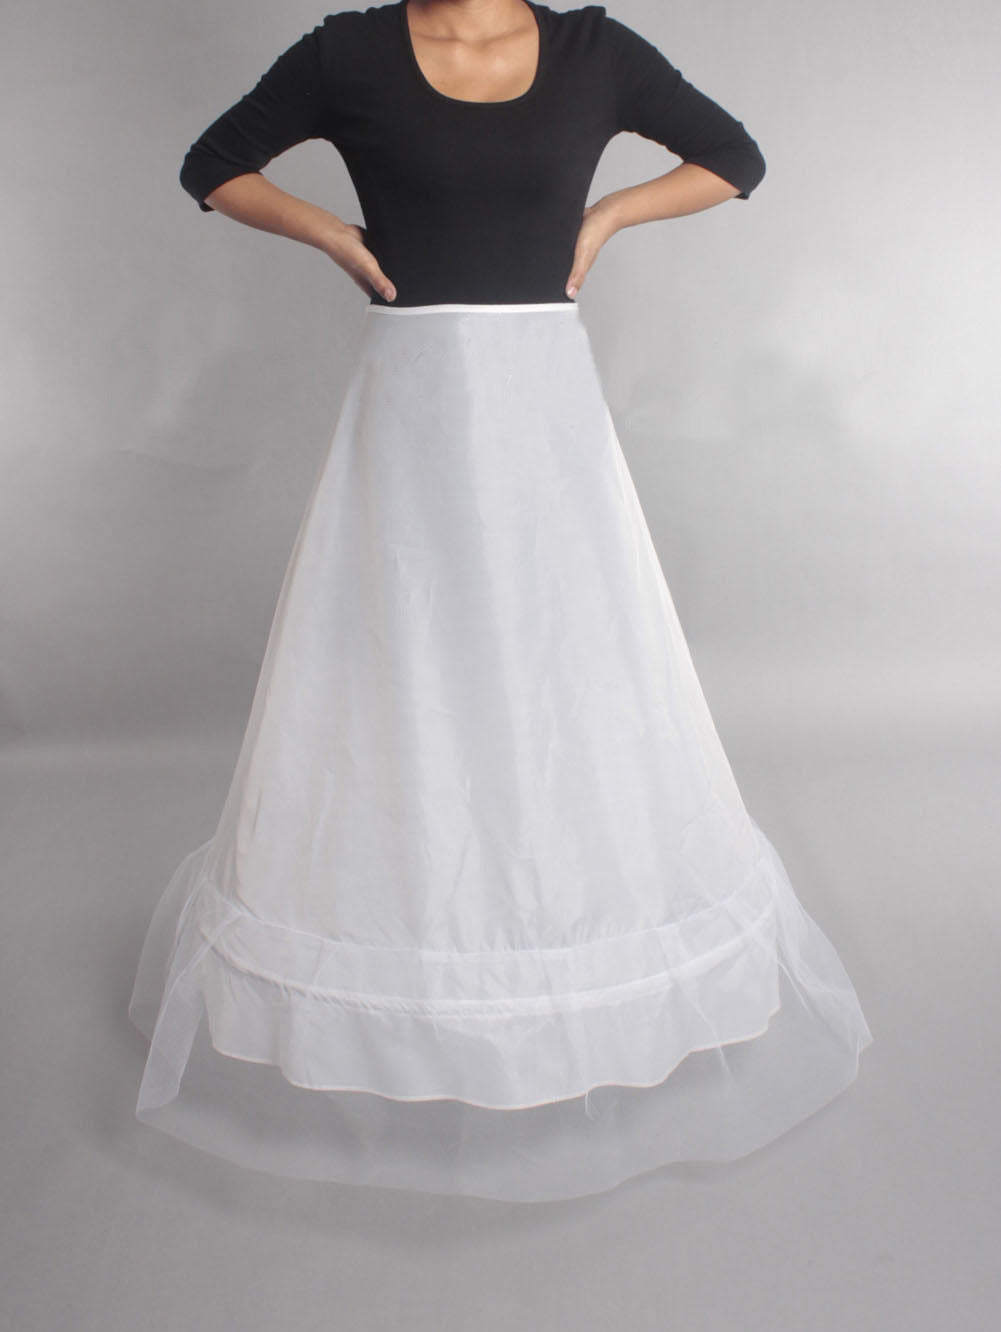 In Store Underskirt Bridal Dress Hoop Slips Wedding Petticoat Crinoline Slip Prom  K